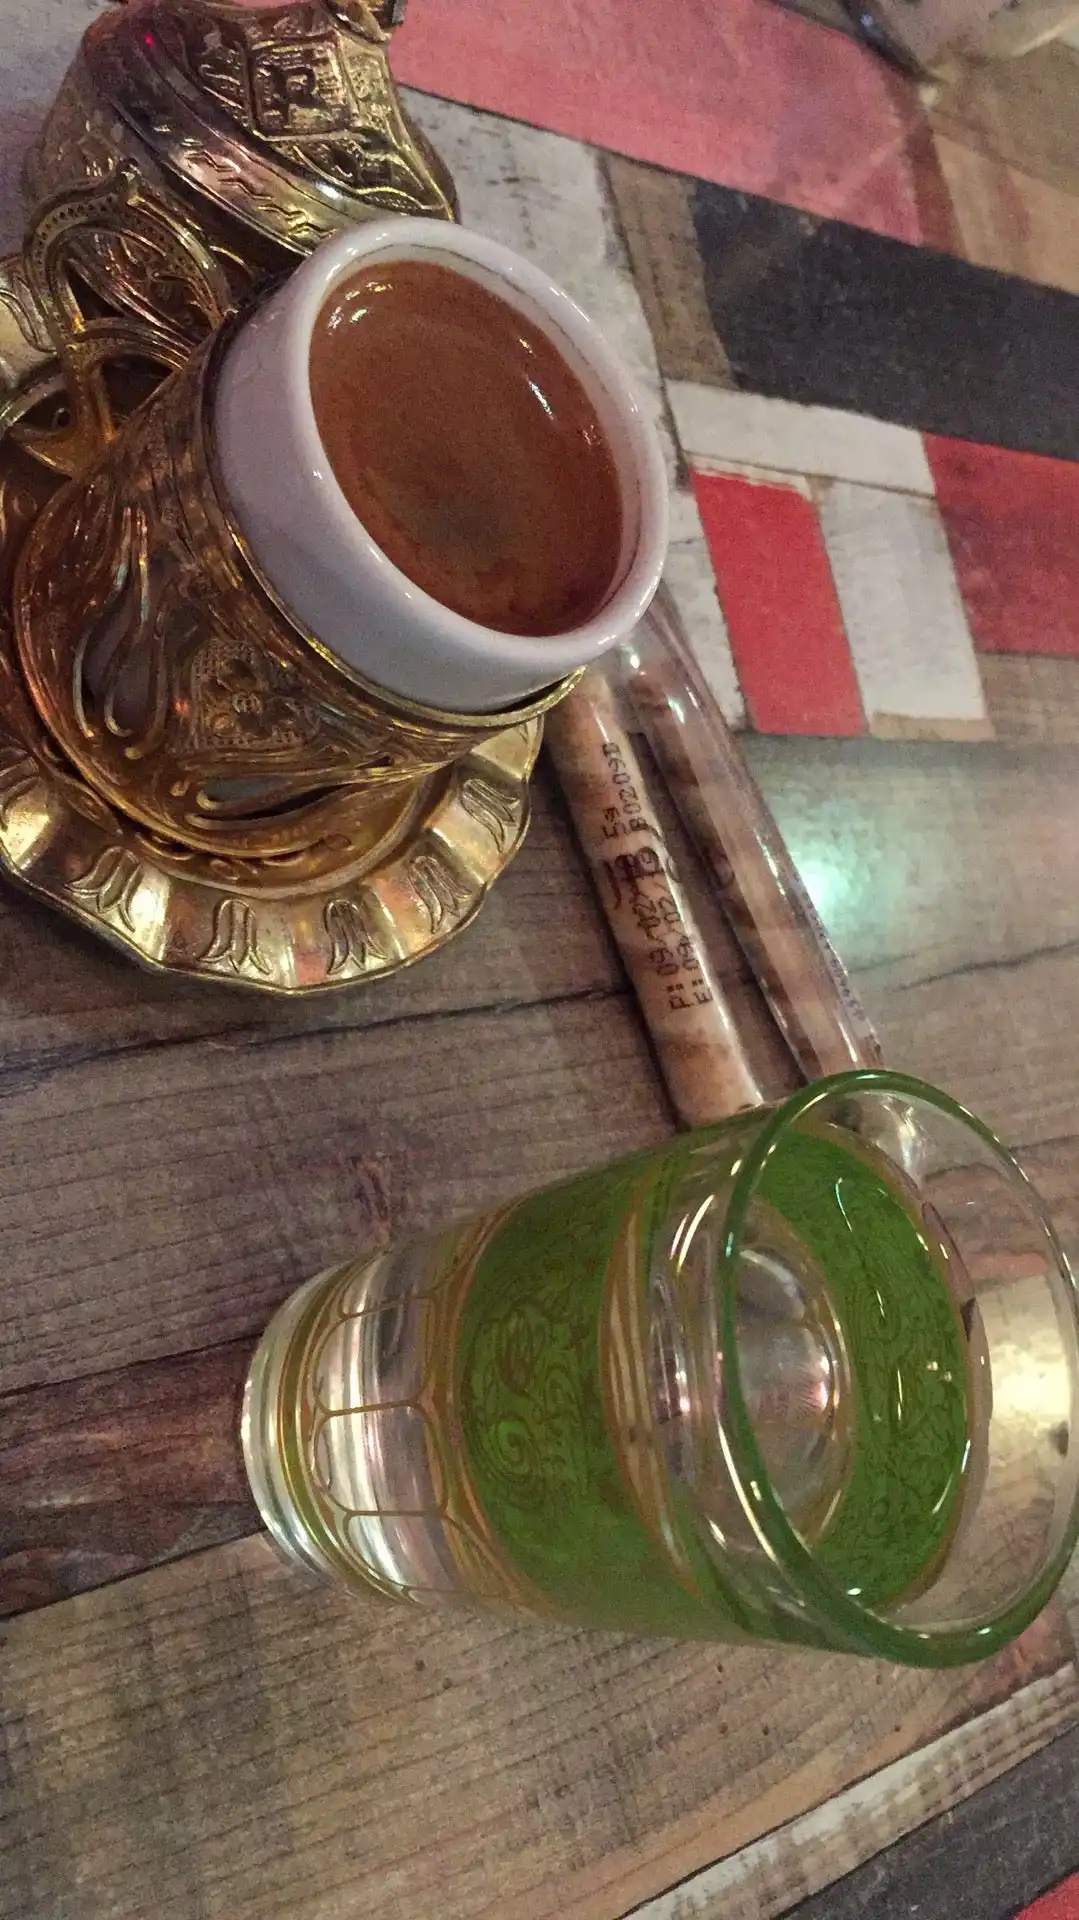 Osmanlı Kafe